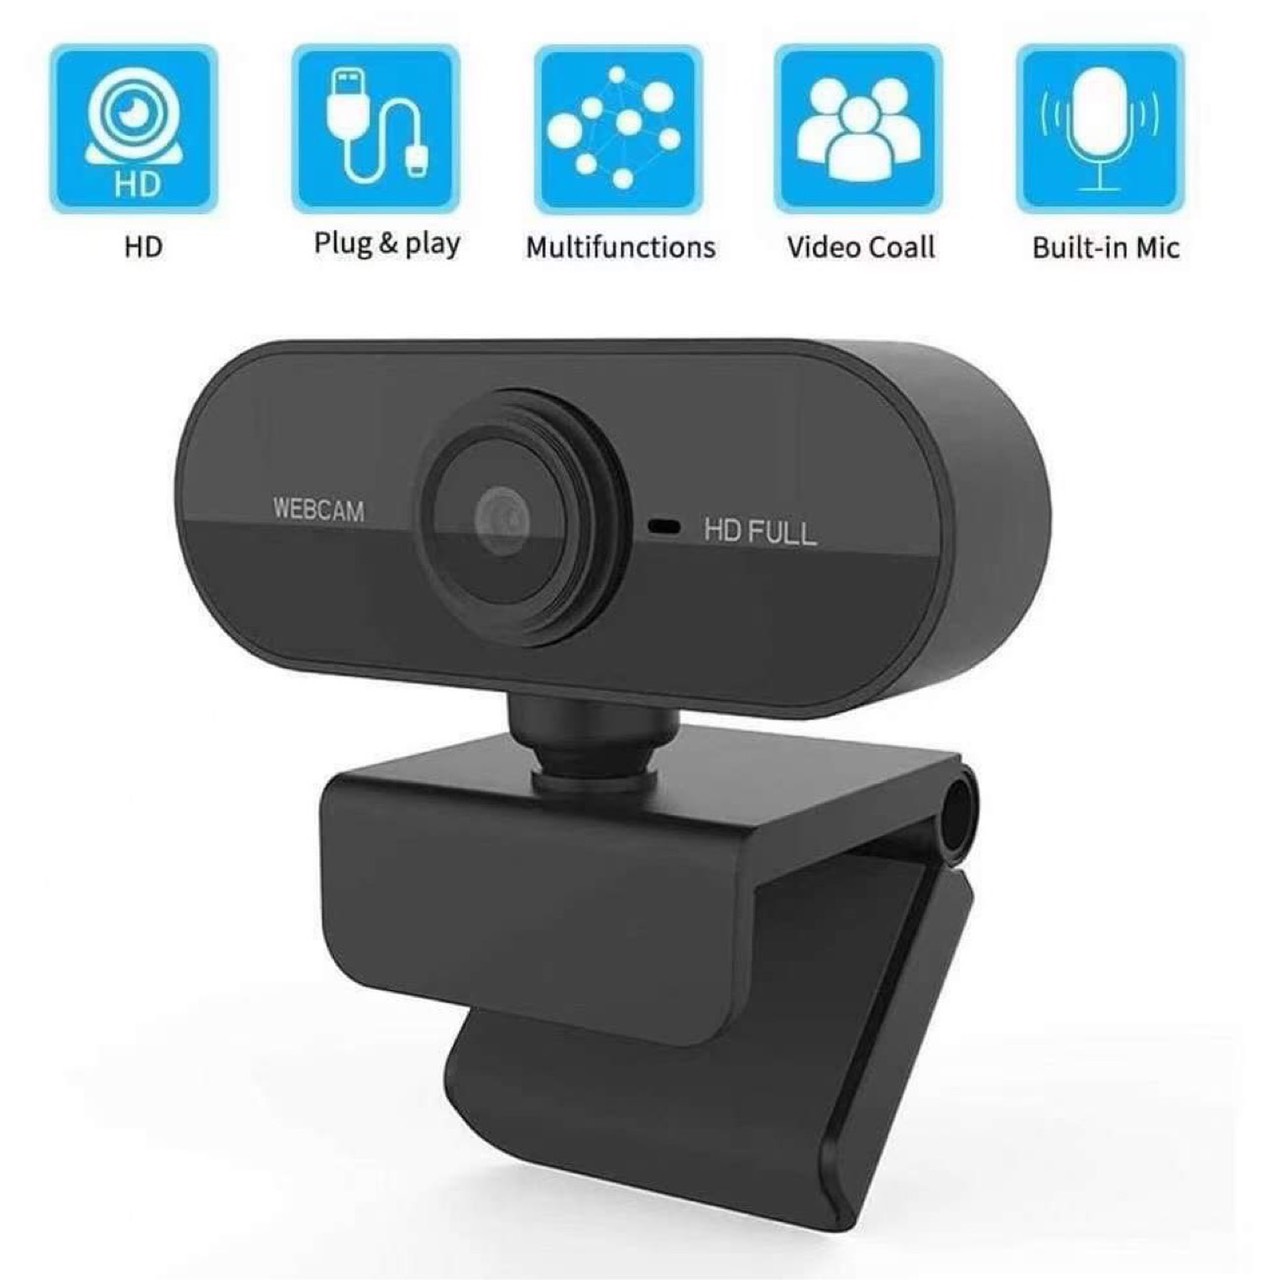 Webcam 1080P Full HD Chuyên dụng cho máy tính